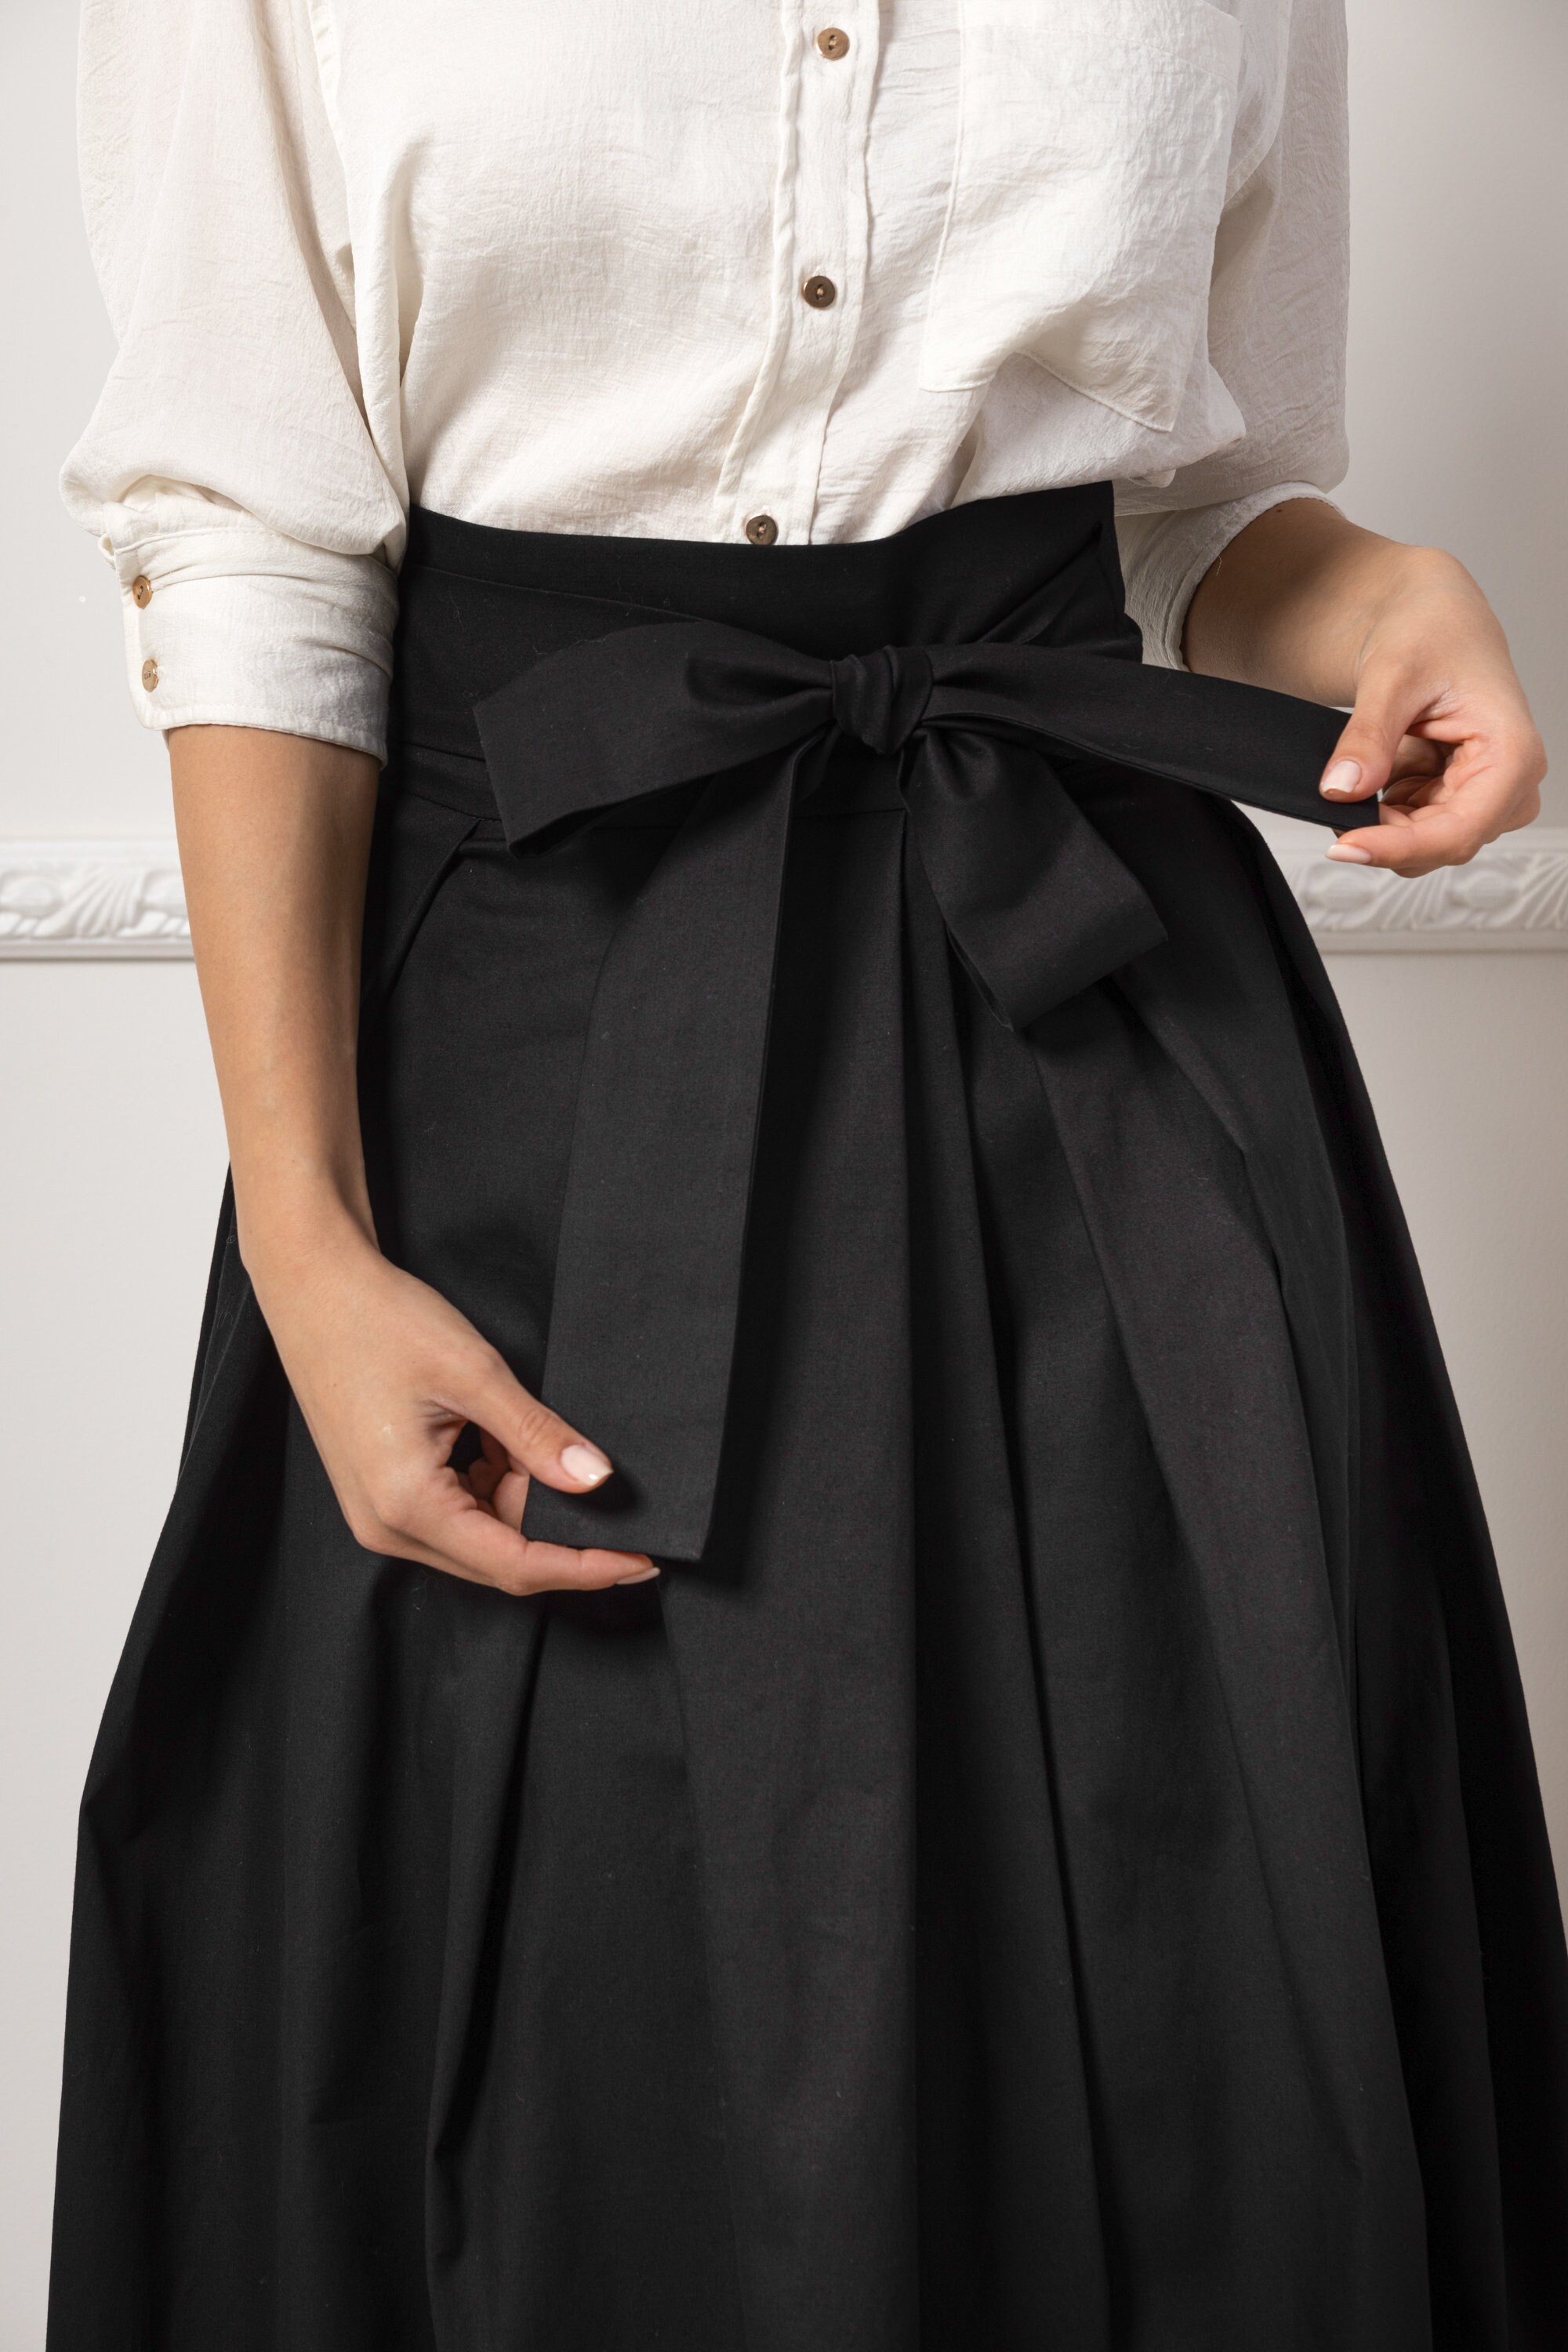 Victorian Walking Maxi Skirt, Long Edwardian High Waist Skirt